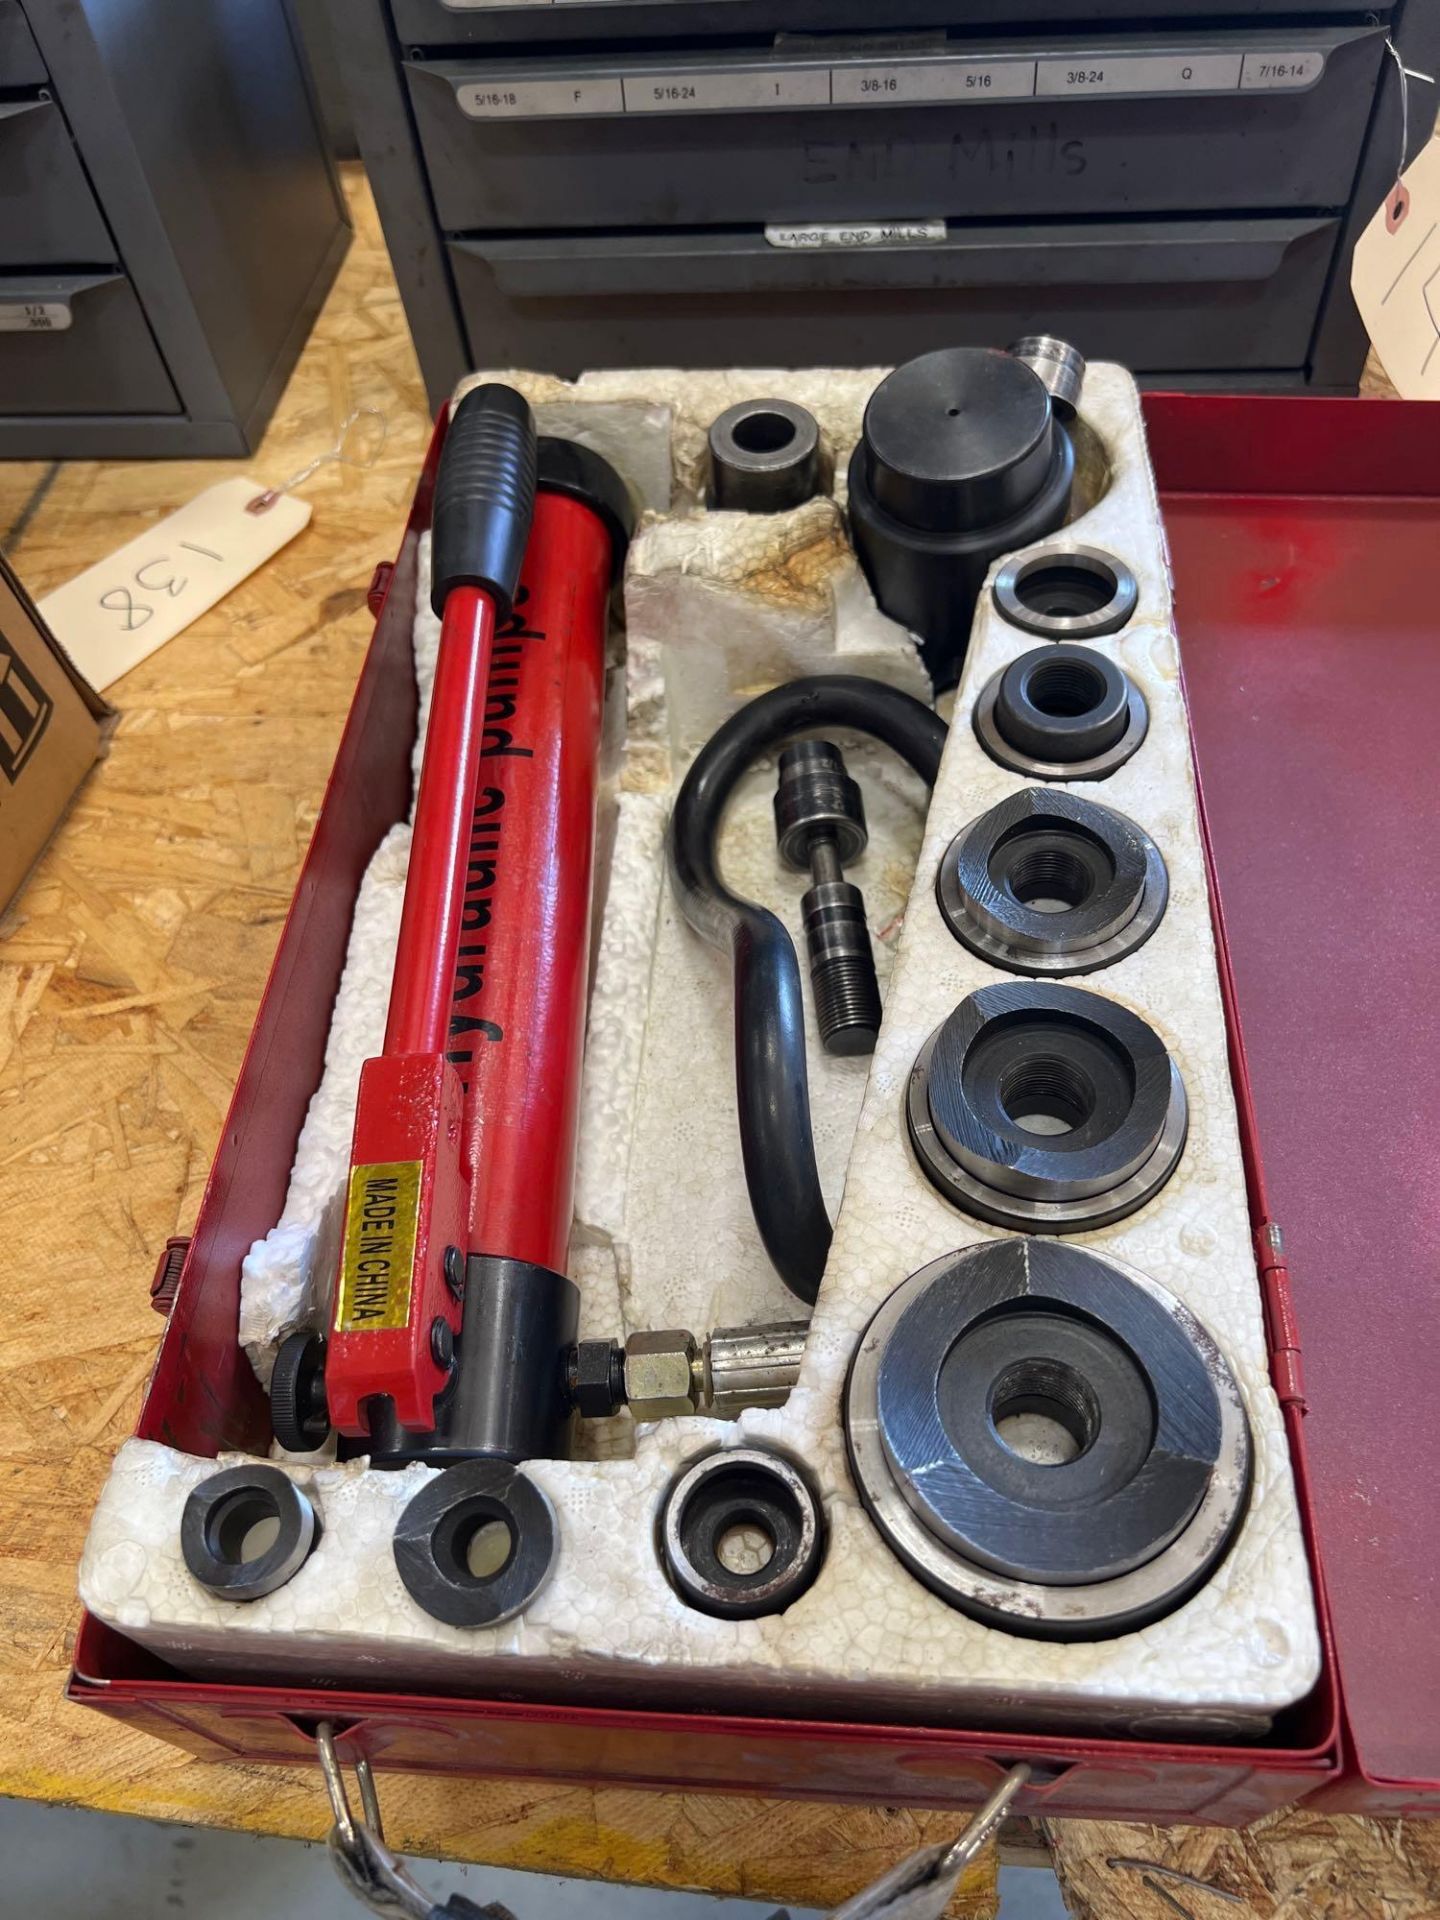 Jeteco SYK 8-02 Hydraulic Punch Driver Kit hole set, 10 Ton - Image 2 of 3